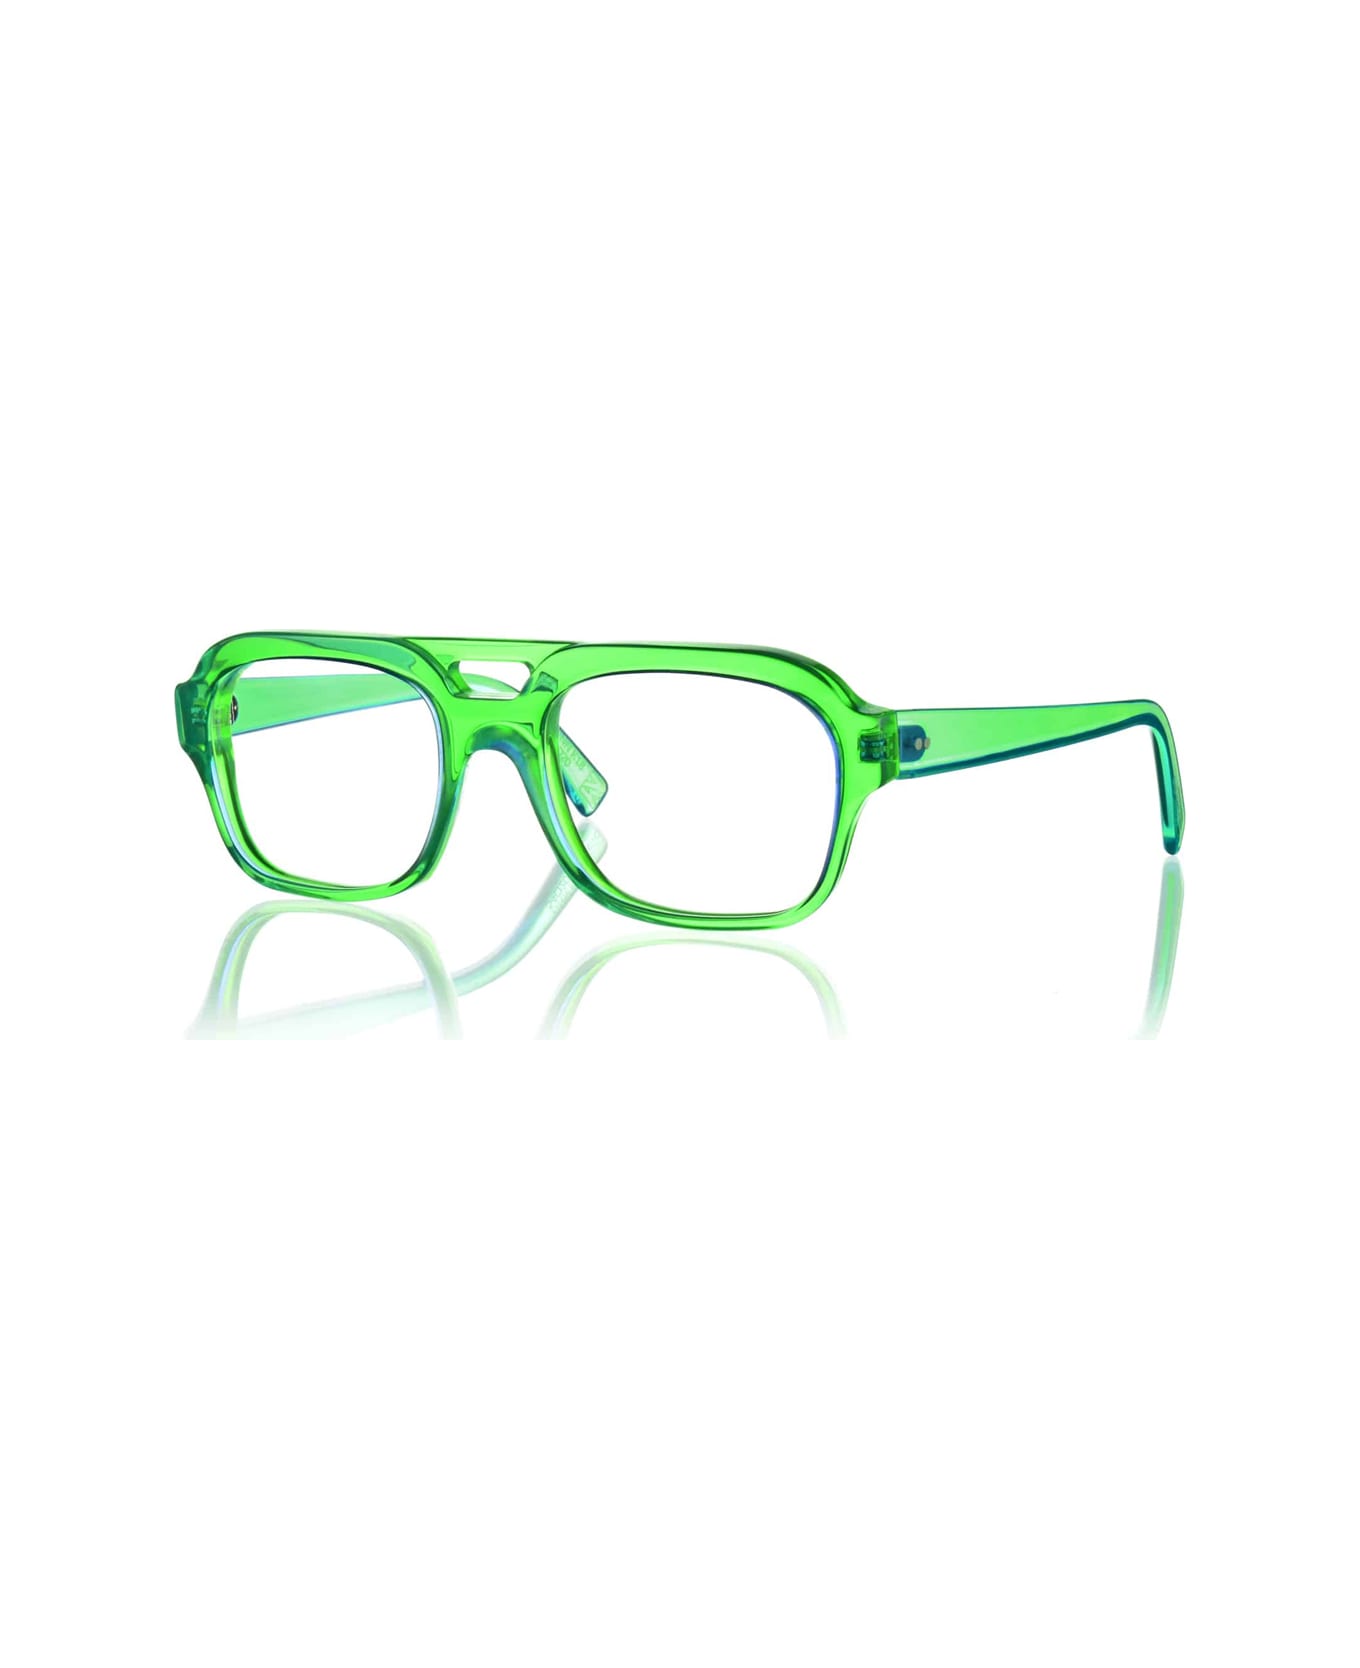 Kirk & Kirk Finn K18 Apple Glasses - Verde アイウェア